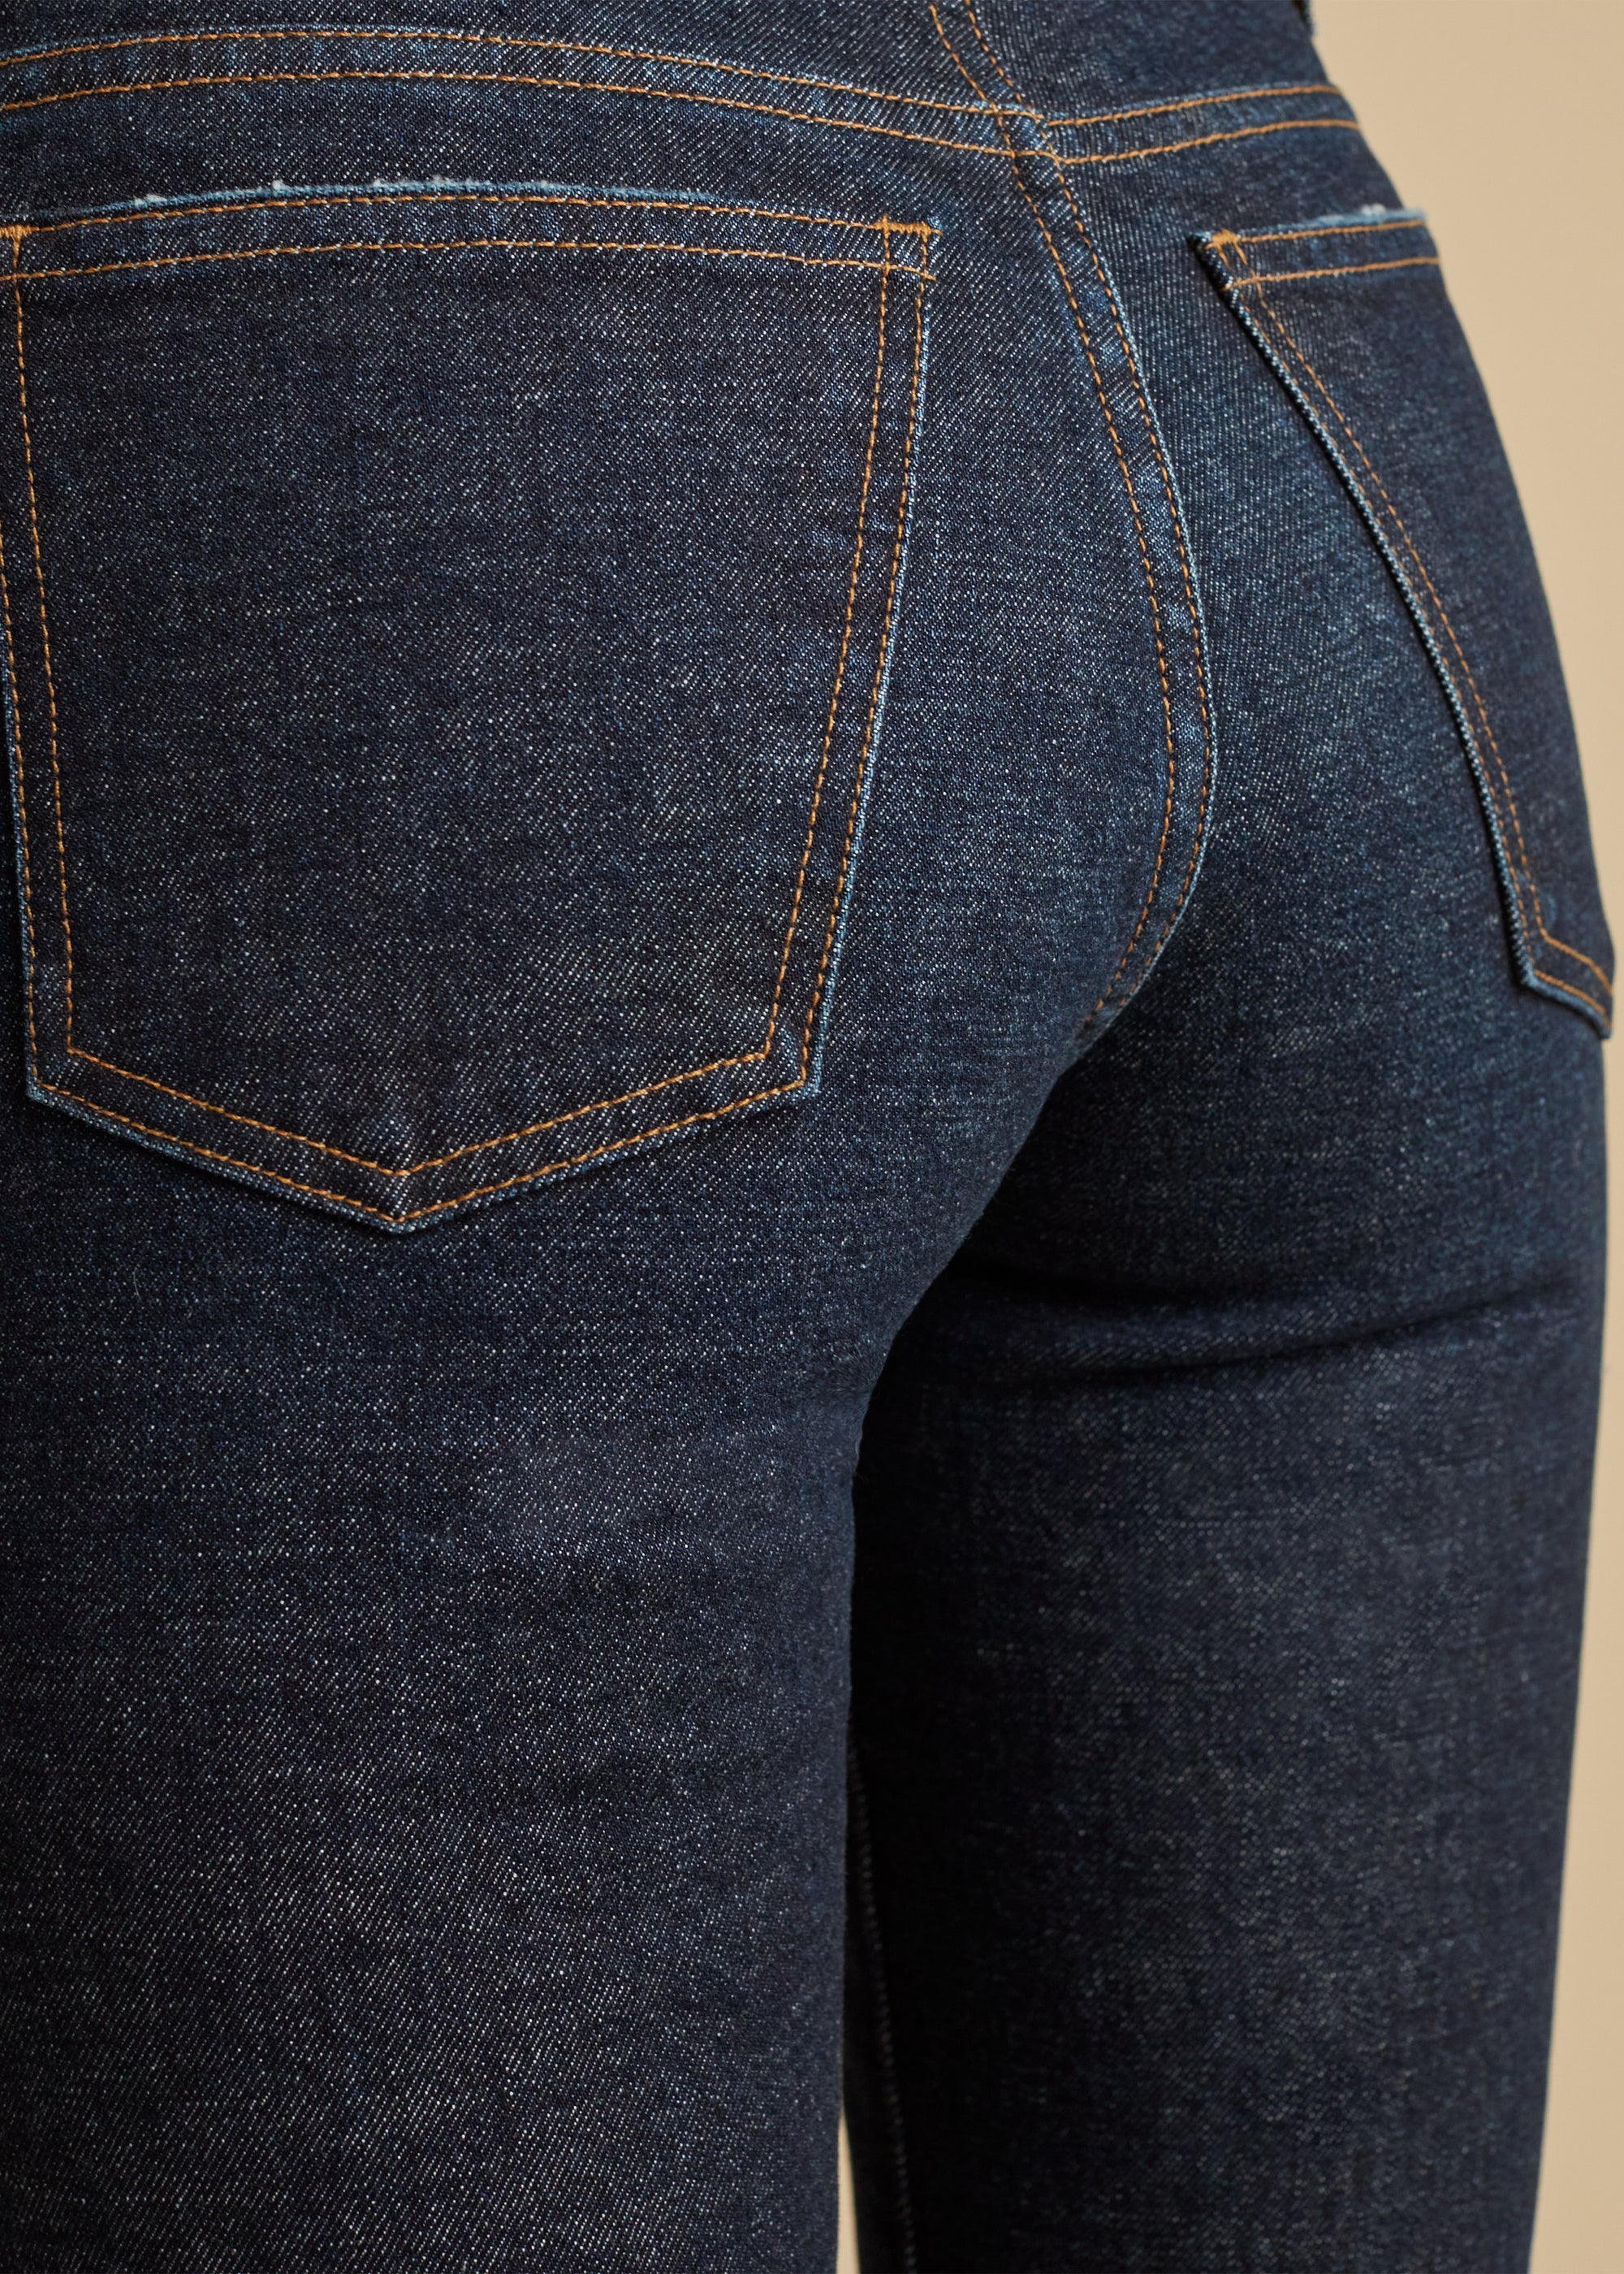 Vivian jeans - Turlington Stretch